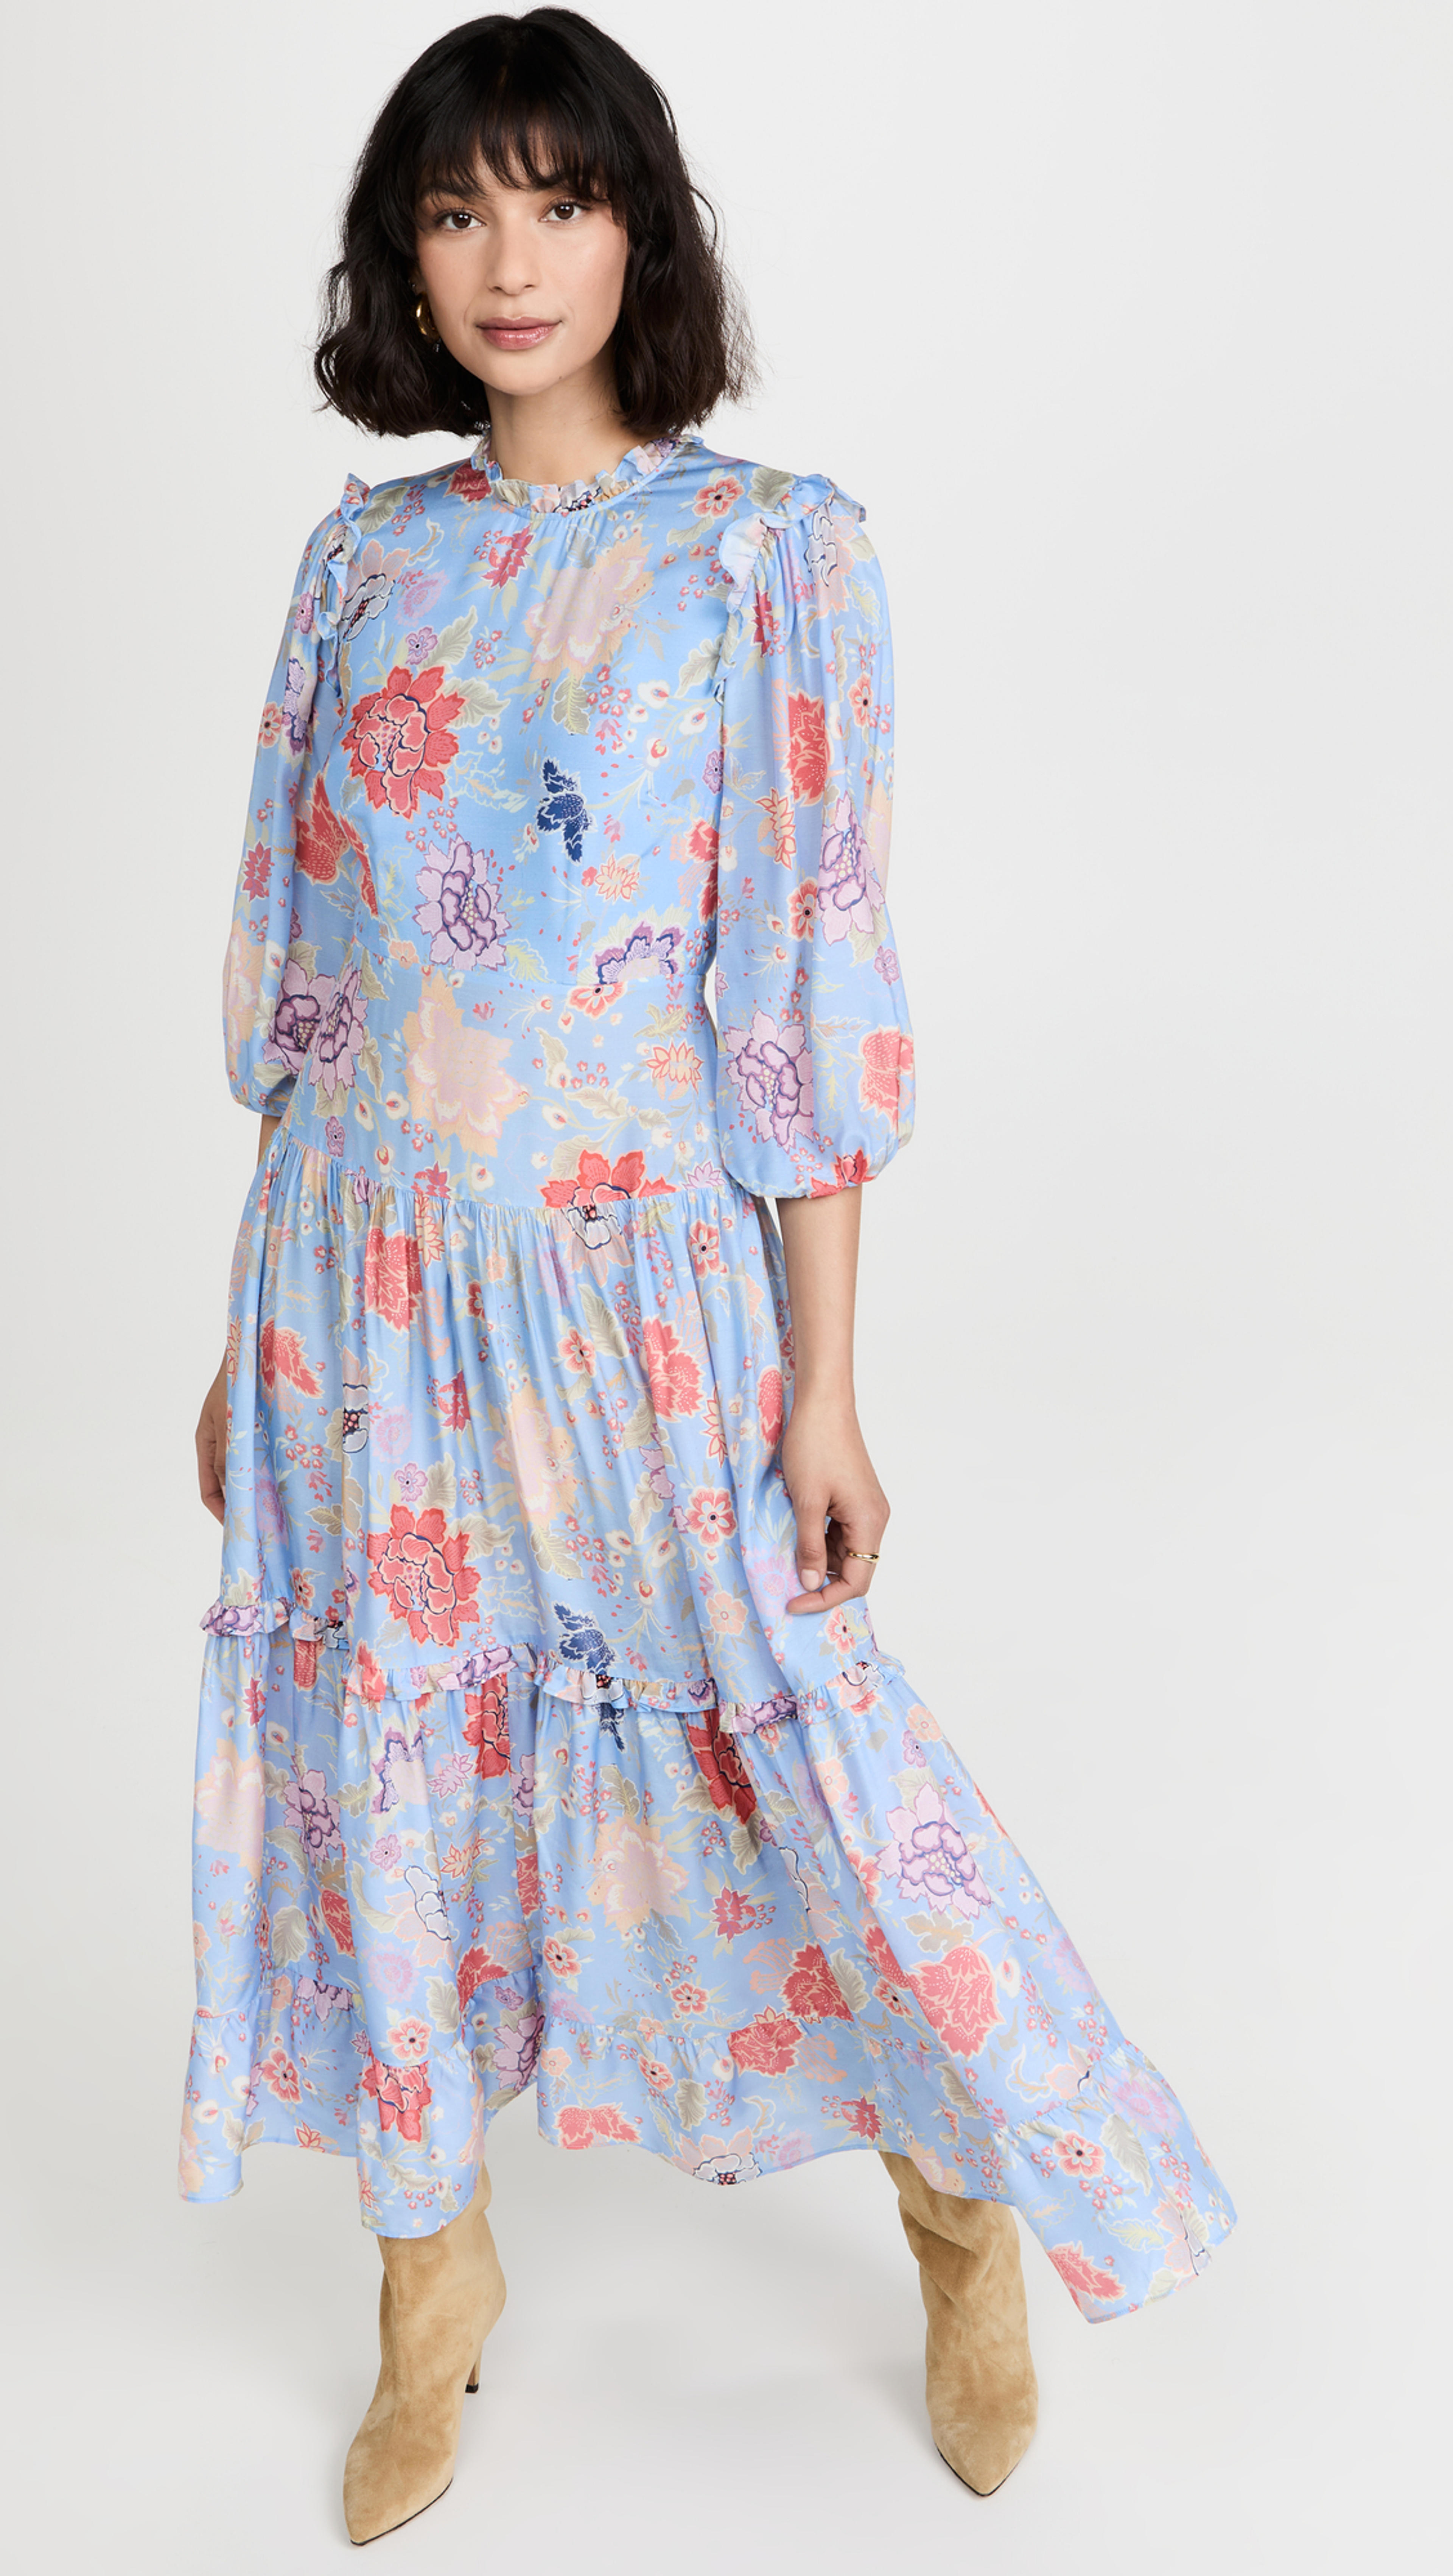 Monet Floral Dress